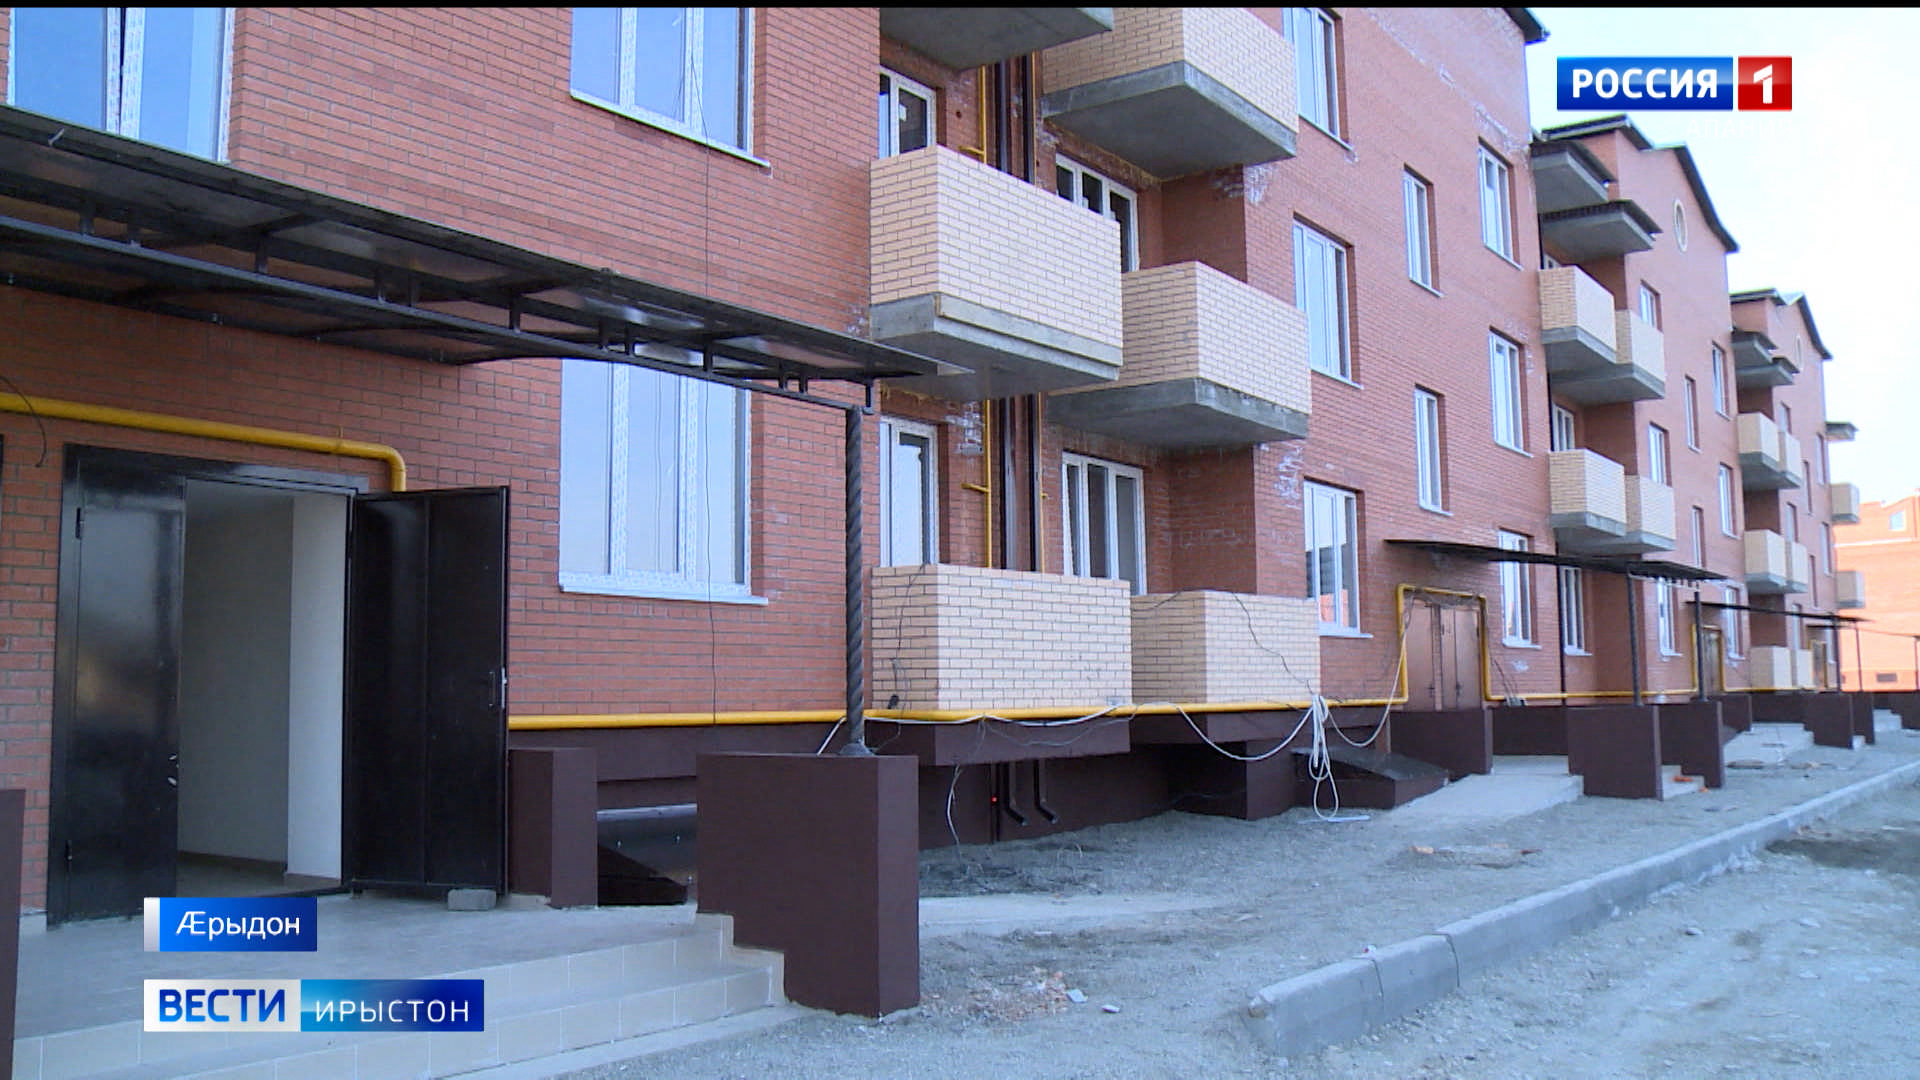 145 семей до конца года переселят из аварийного жилья во Владикавказе